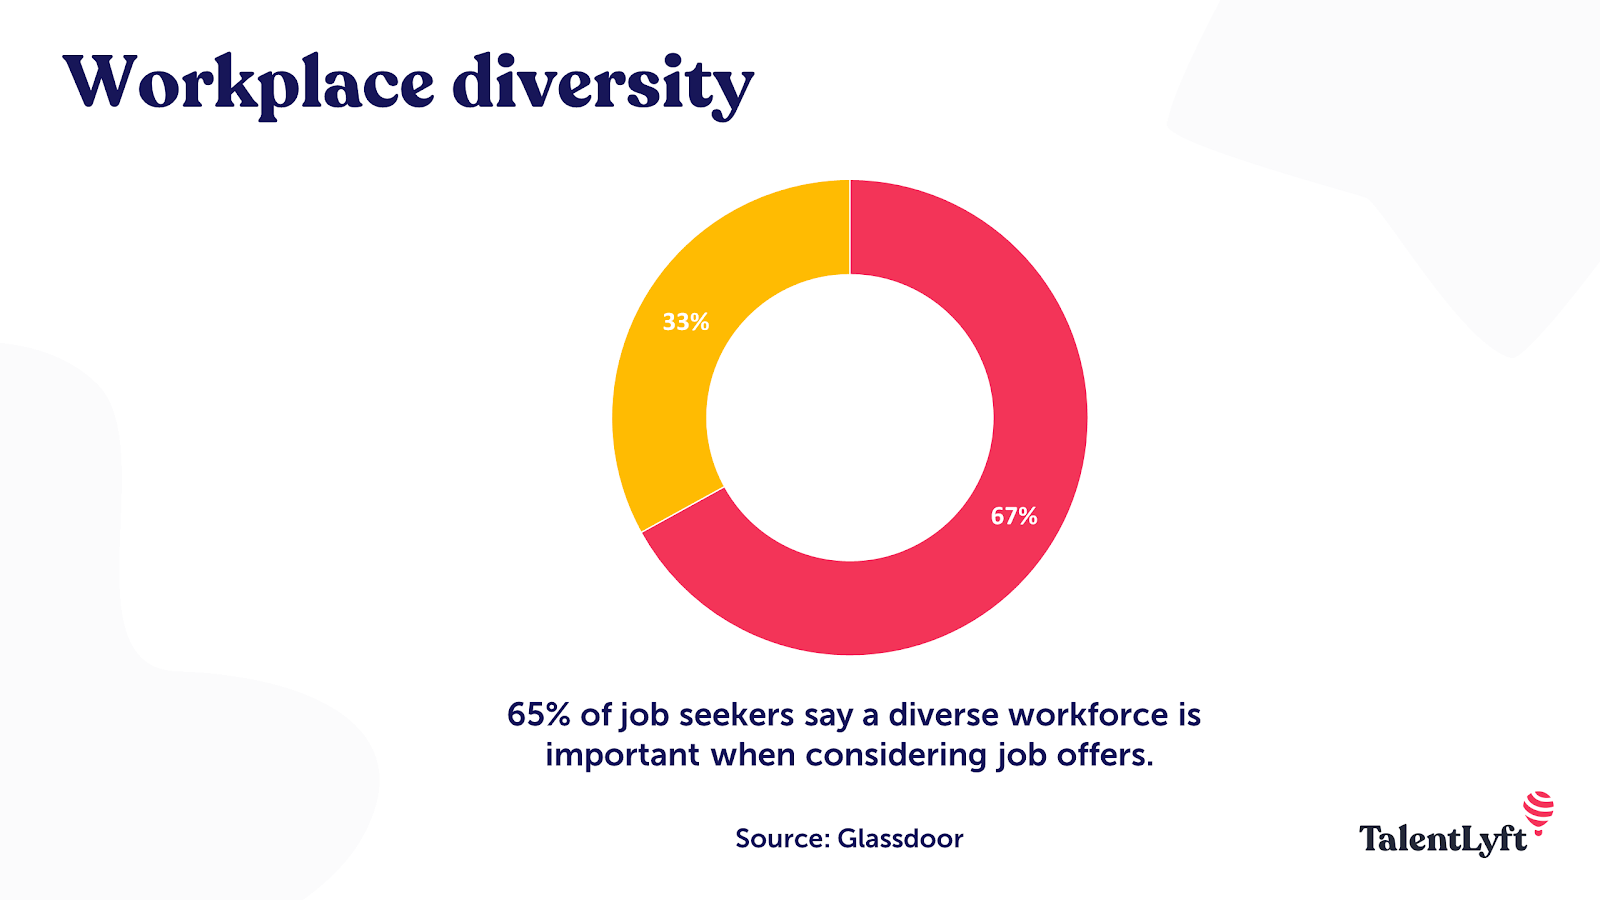 工作场所多样性对招聘的重要性